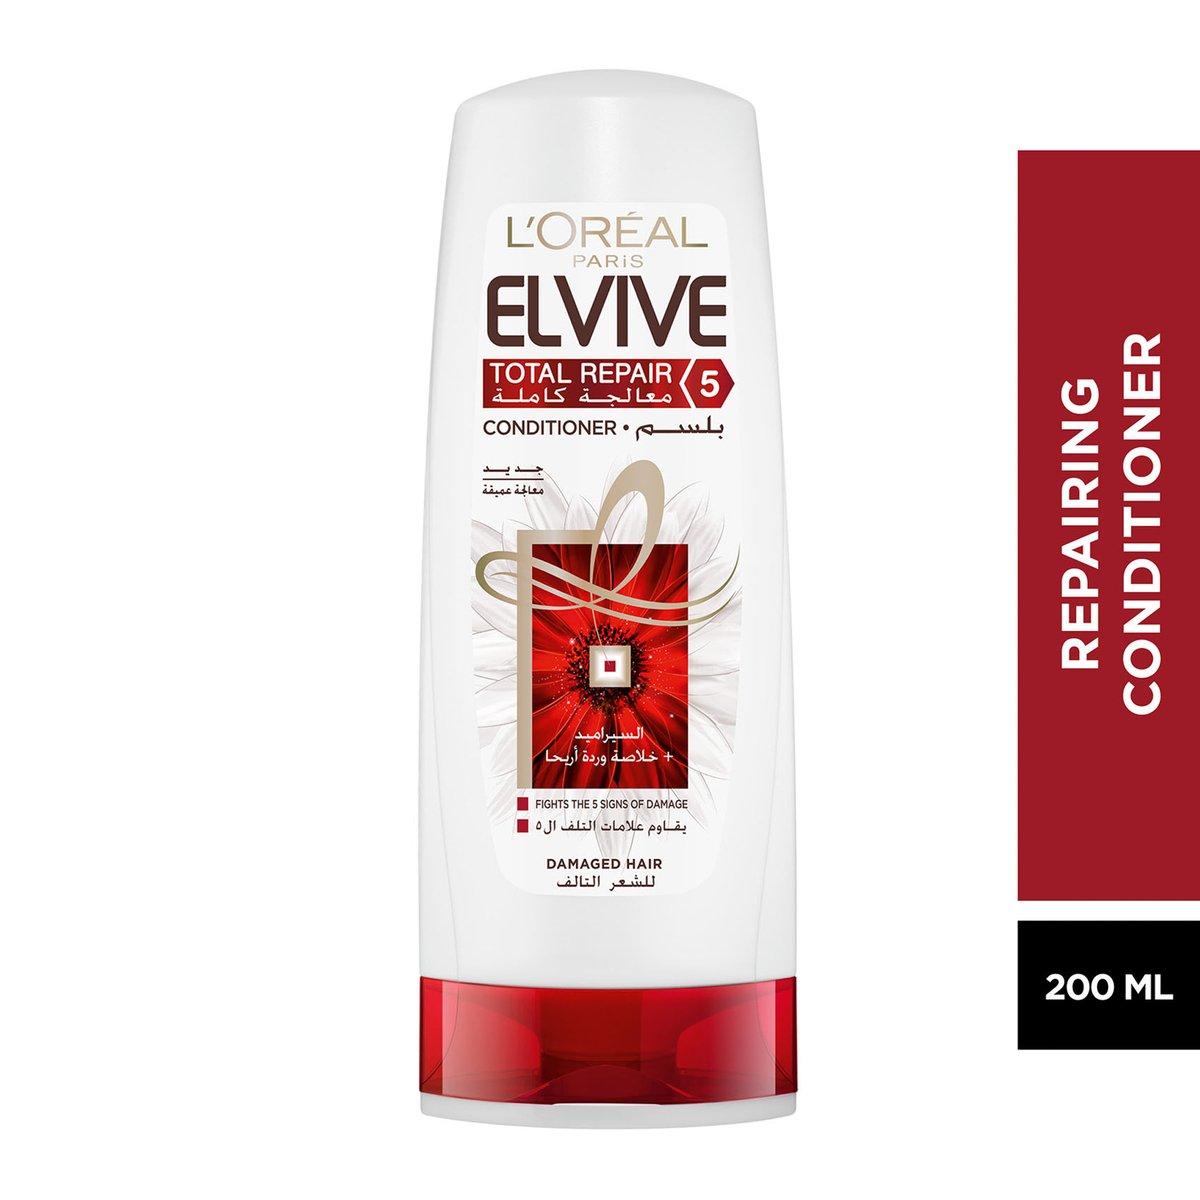 L'Oreal Paris Elvive Hair Repairing Conditioner 200 ml